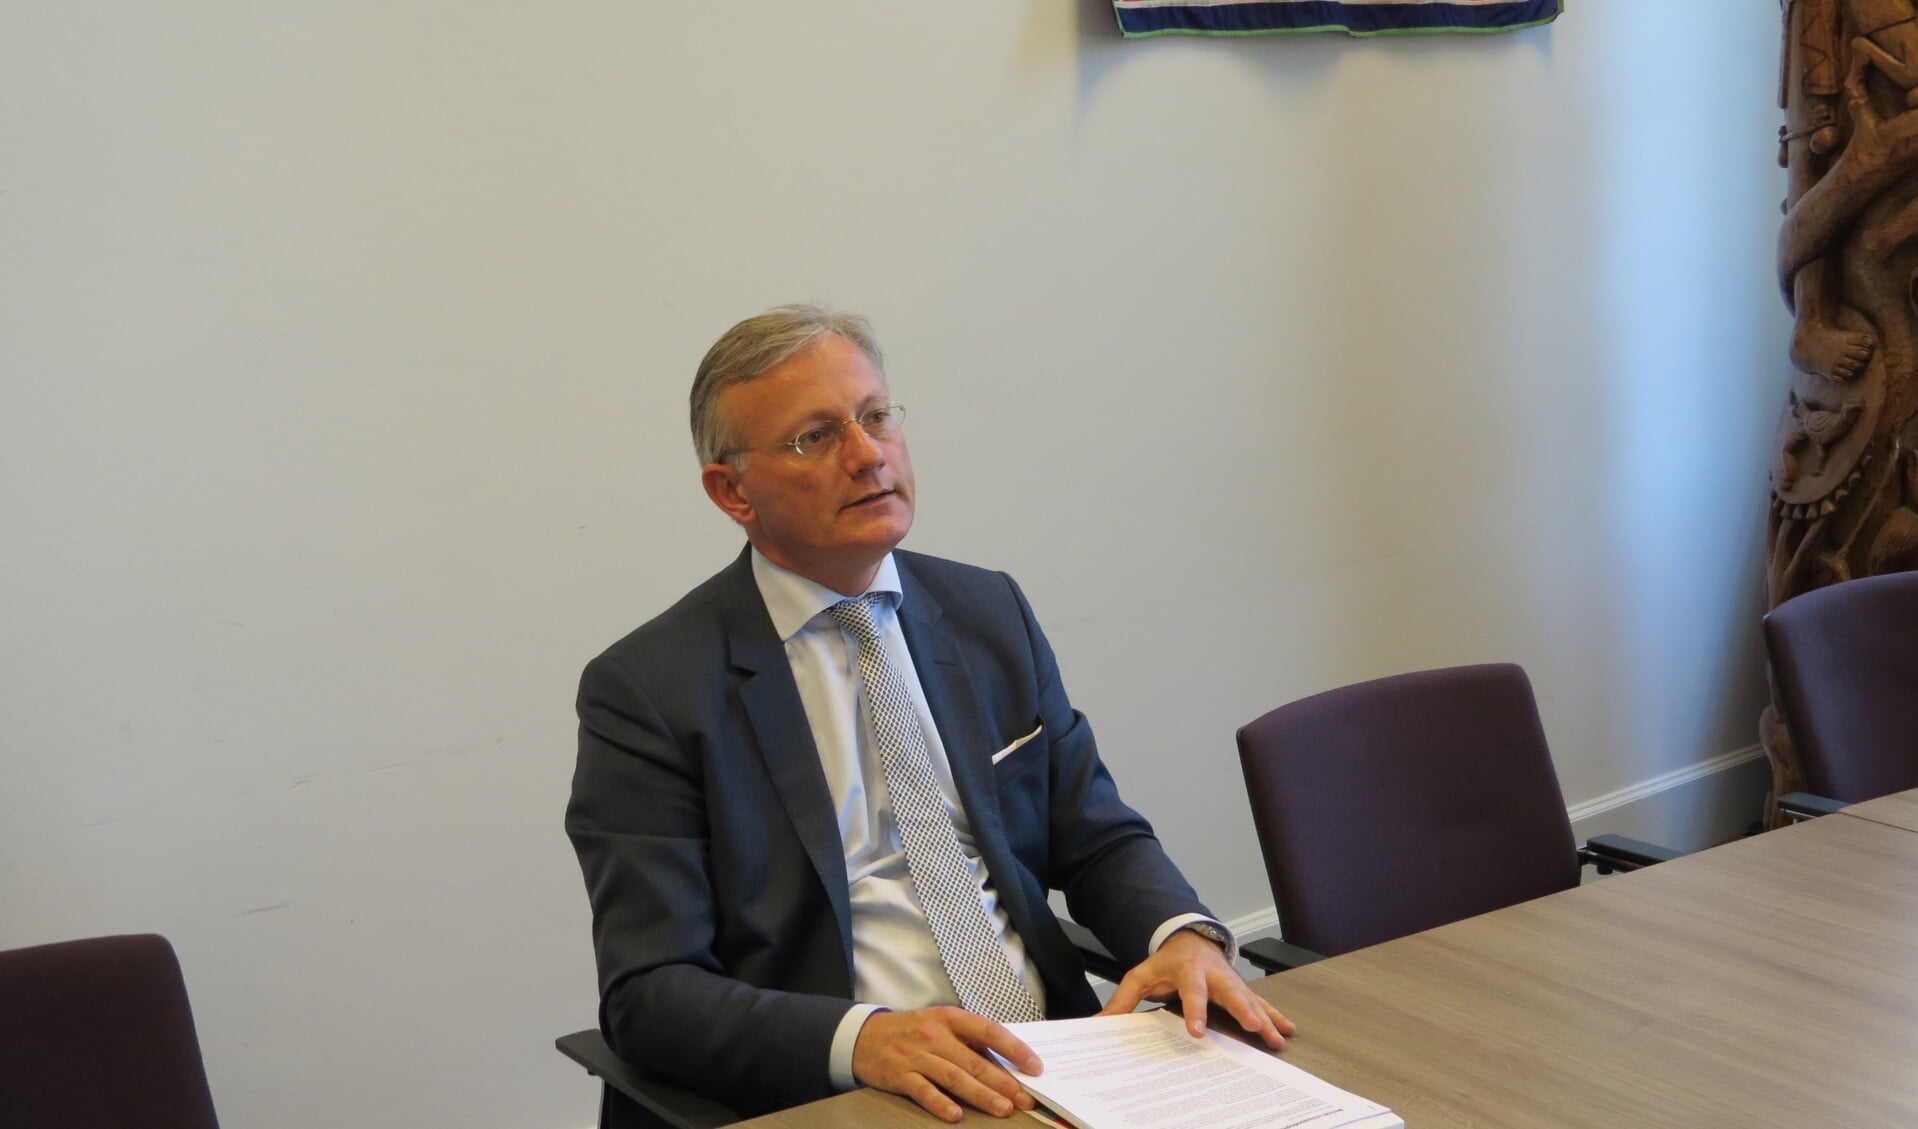 Burgemeester Arjen Gerritsen had de leiding bij de gang van zaken rond de opvang.